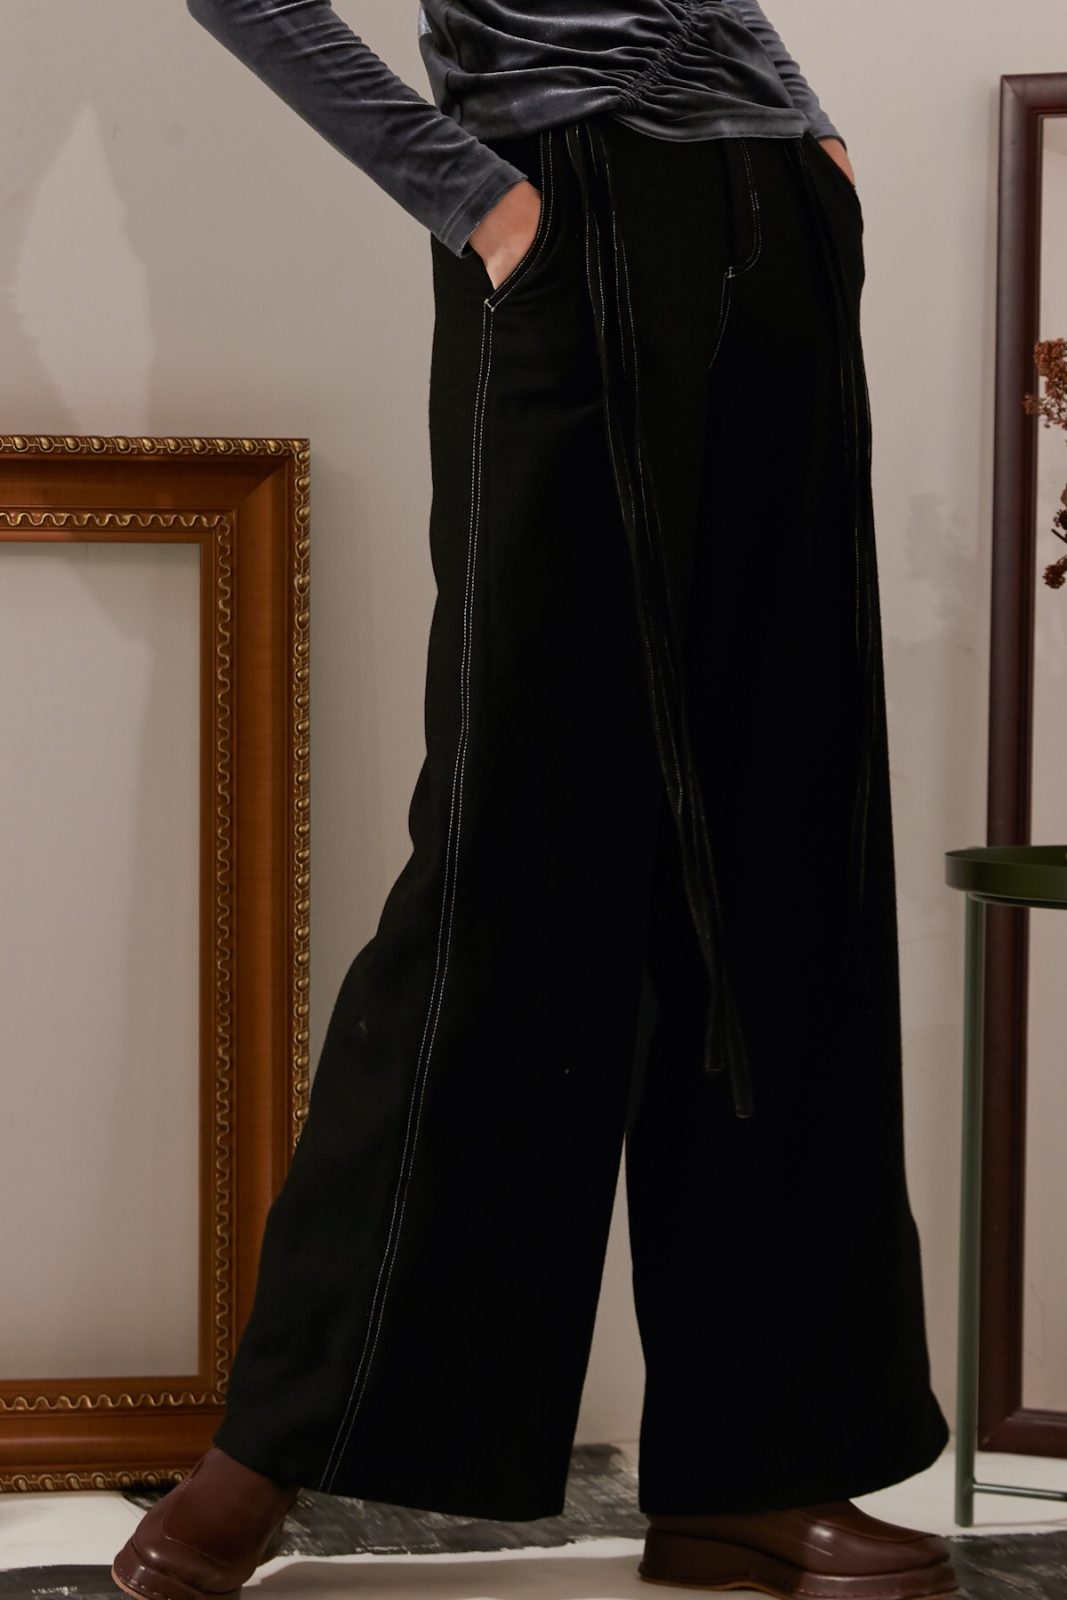 SKYE modern minimalist women fashion long wool wide legged pants with tie belt black 8